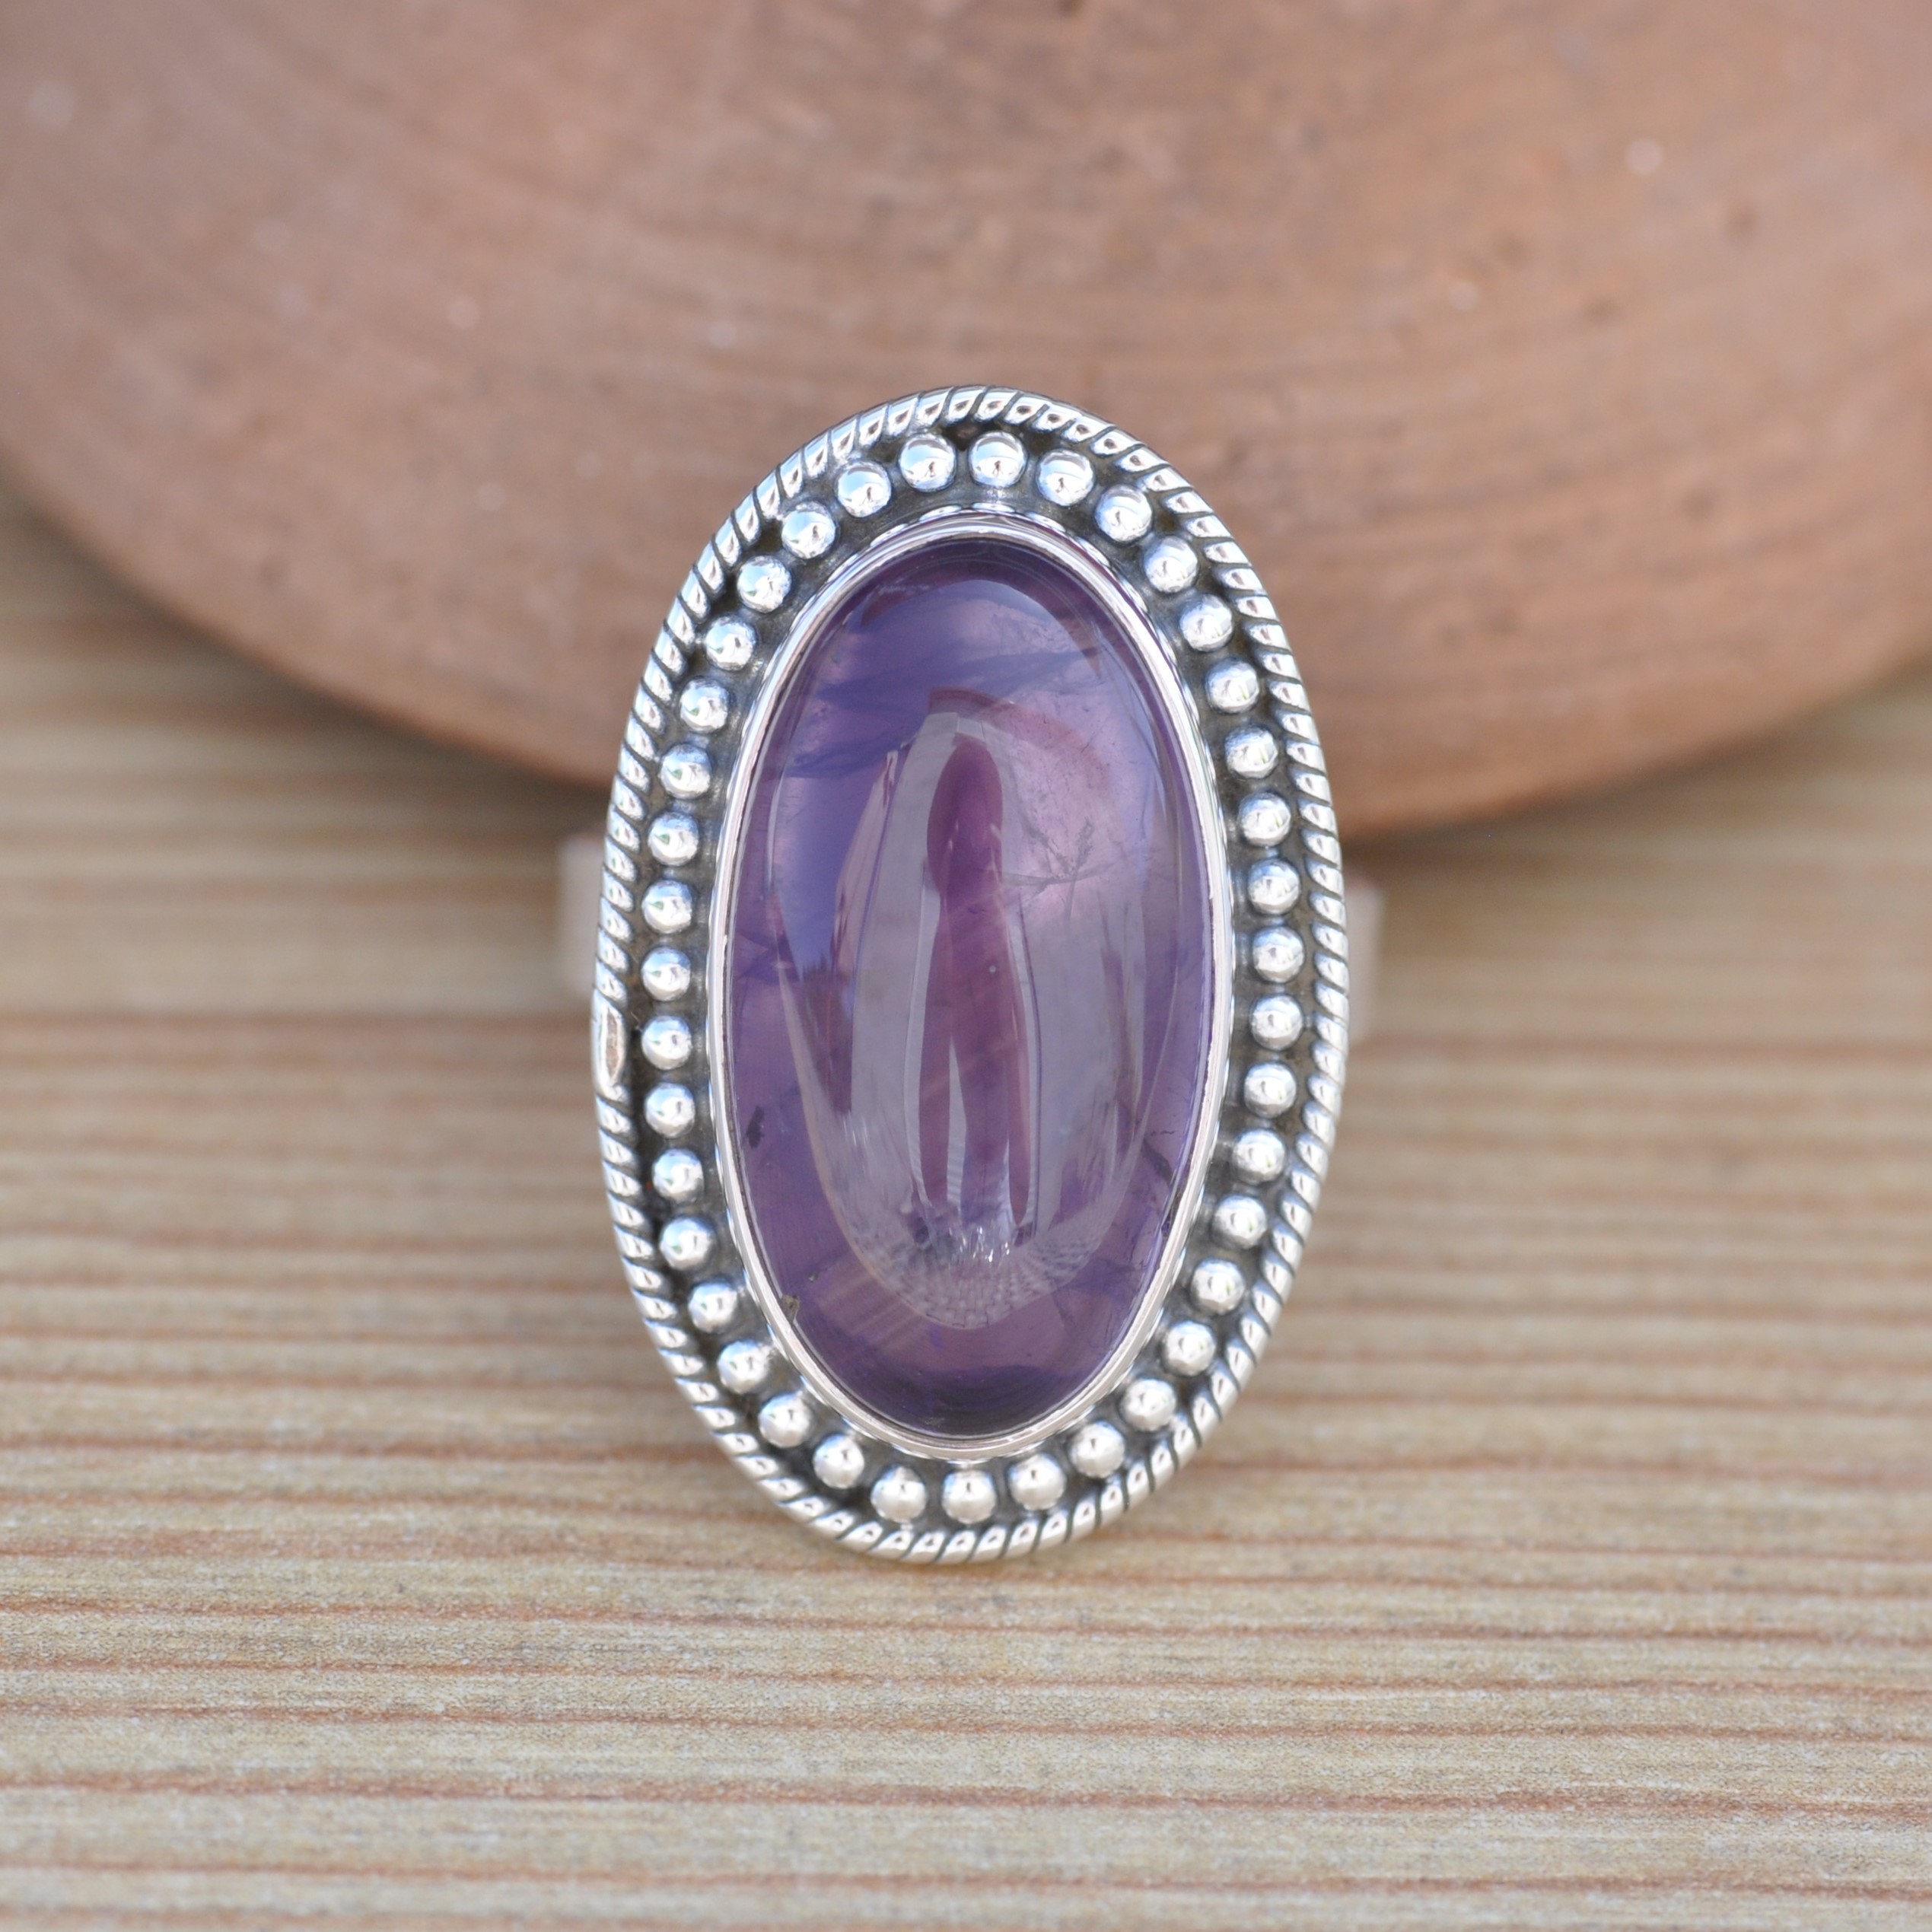 Bague ethnique chic en argent et pierre ovale Améthyste violette